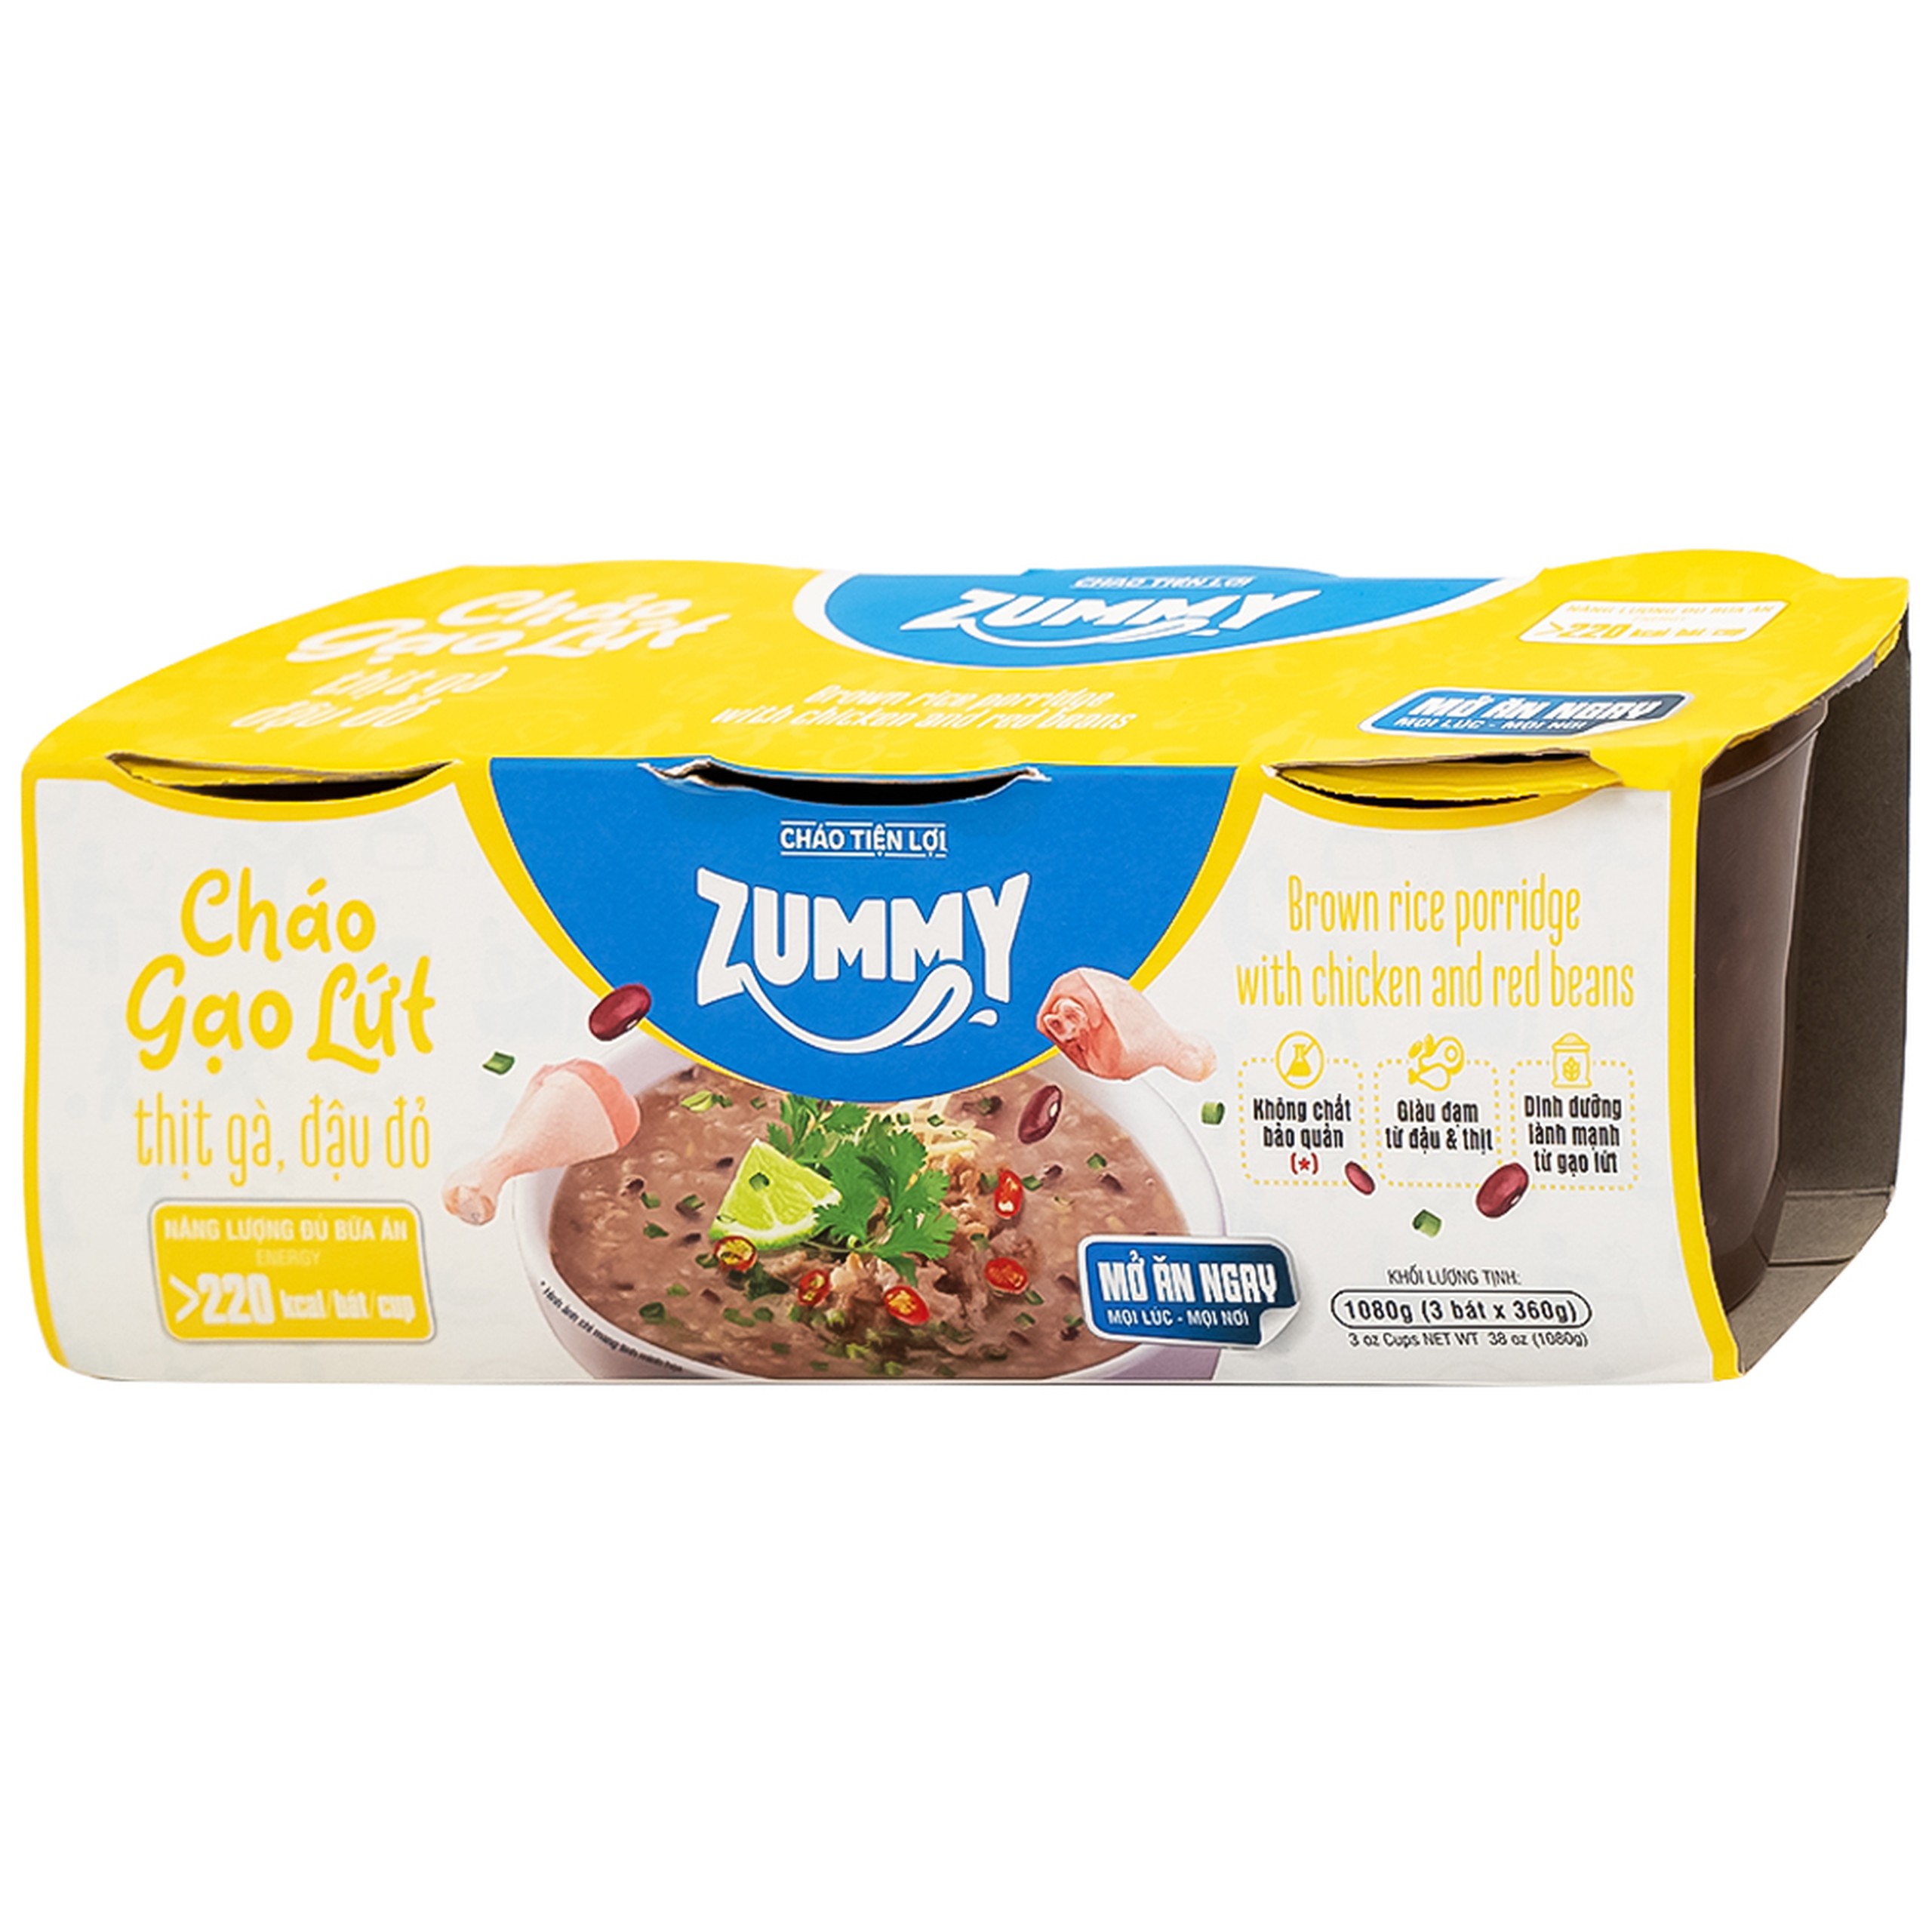 Cháo gạo lứt thịt gà đậu đỏ Zummy giàu đạm từ đậu và thịt, không chất bảo quản (Lốc 3 hộp)